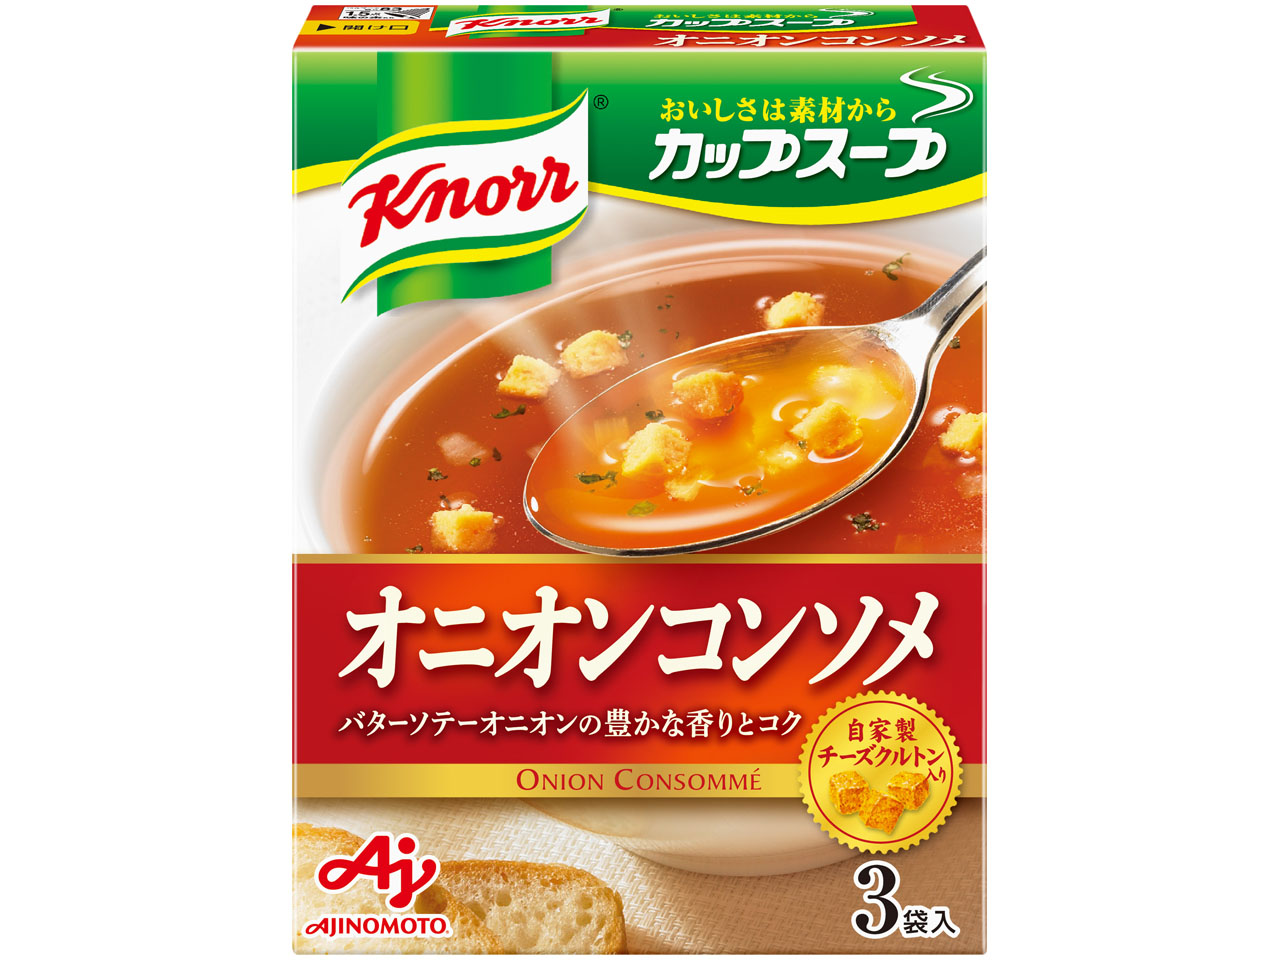 「クノール カップスープ」オニオンコンソメ